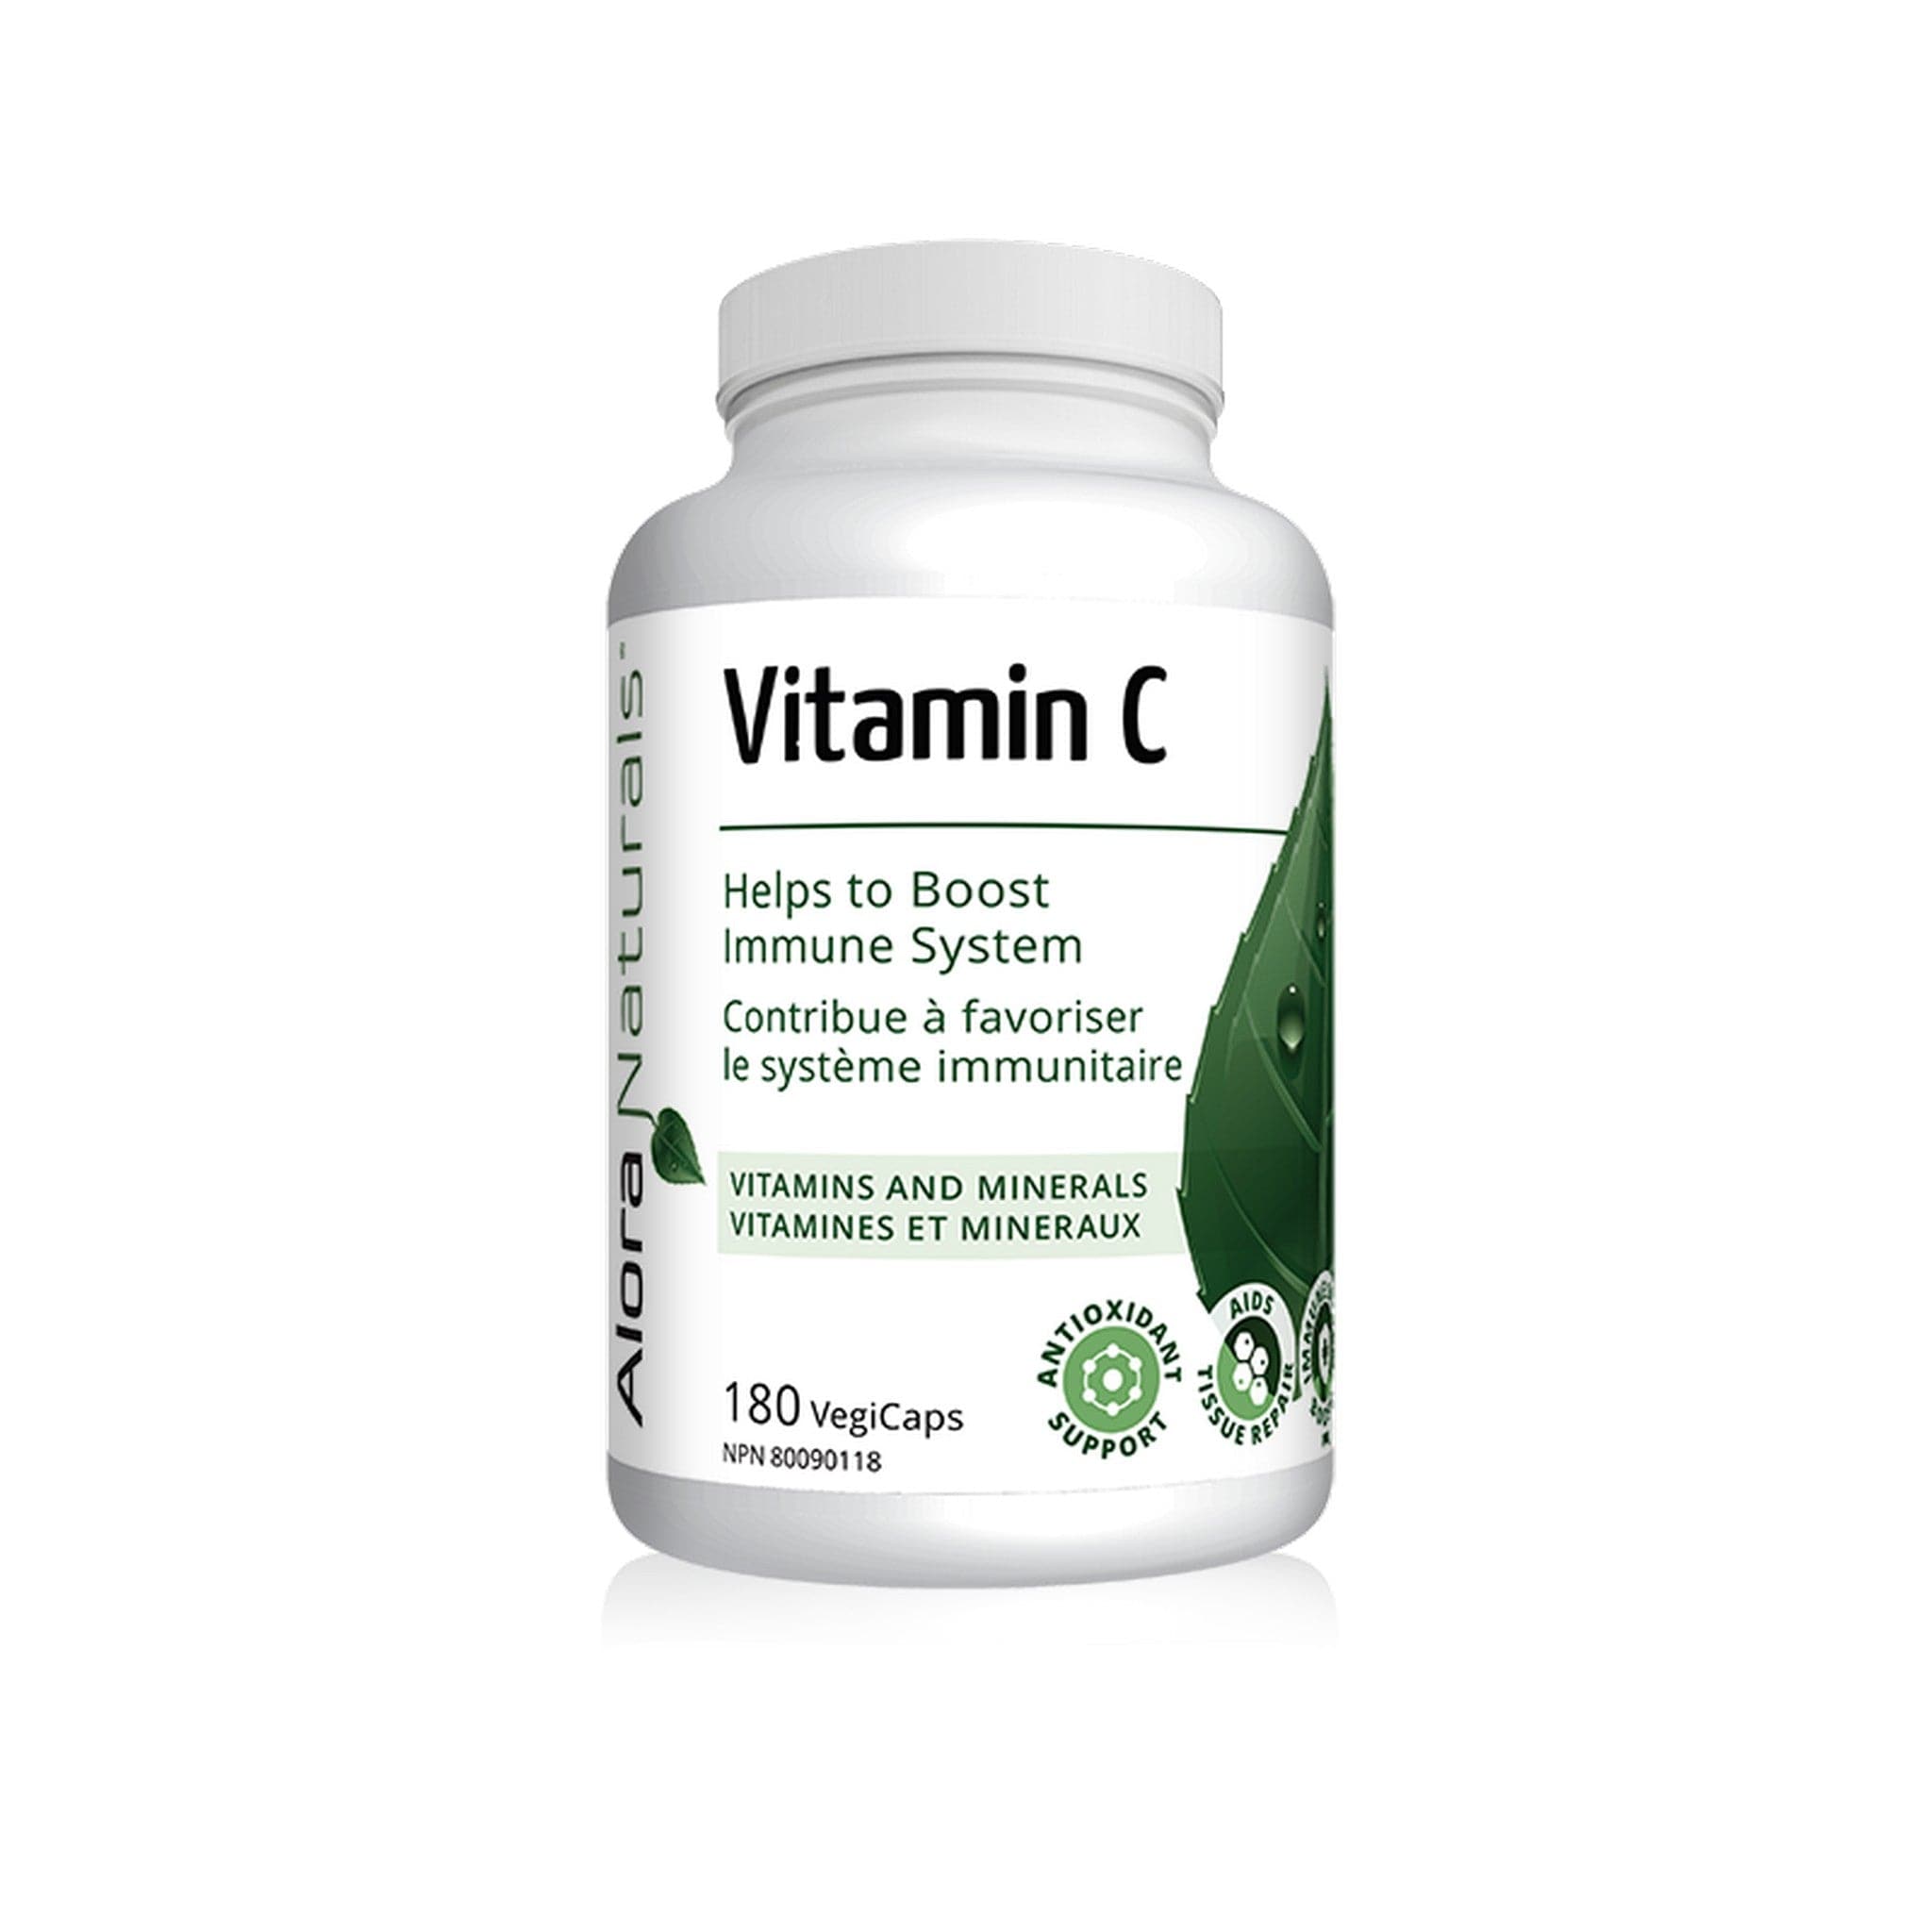 Alora Naturals Vitamine C 500mg 180 capsules